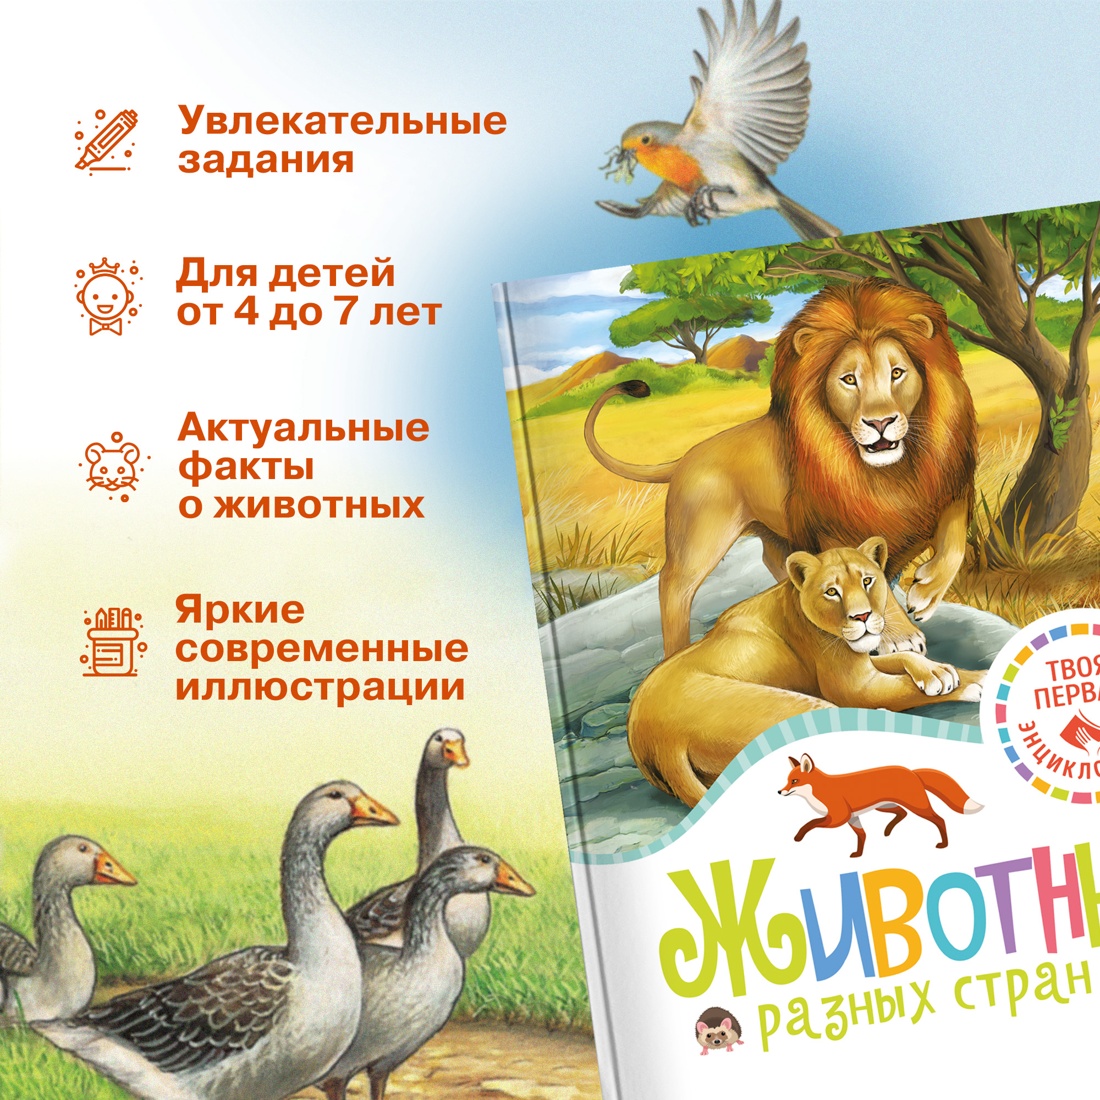 Промо материал к книге "Животные разных стран" №1